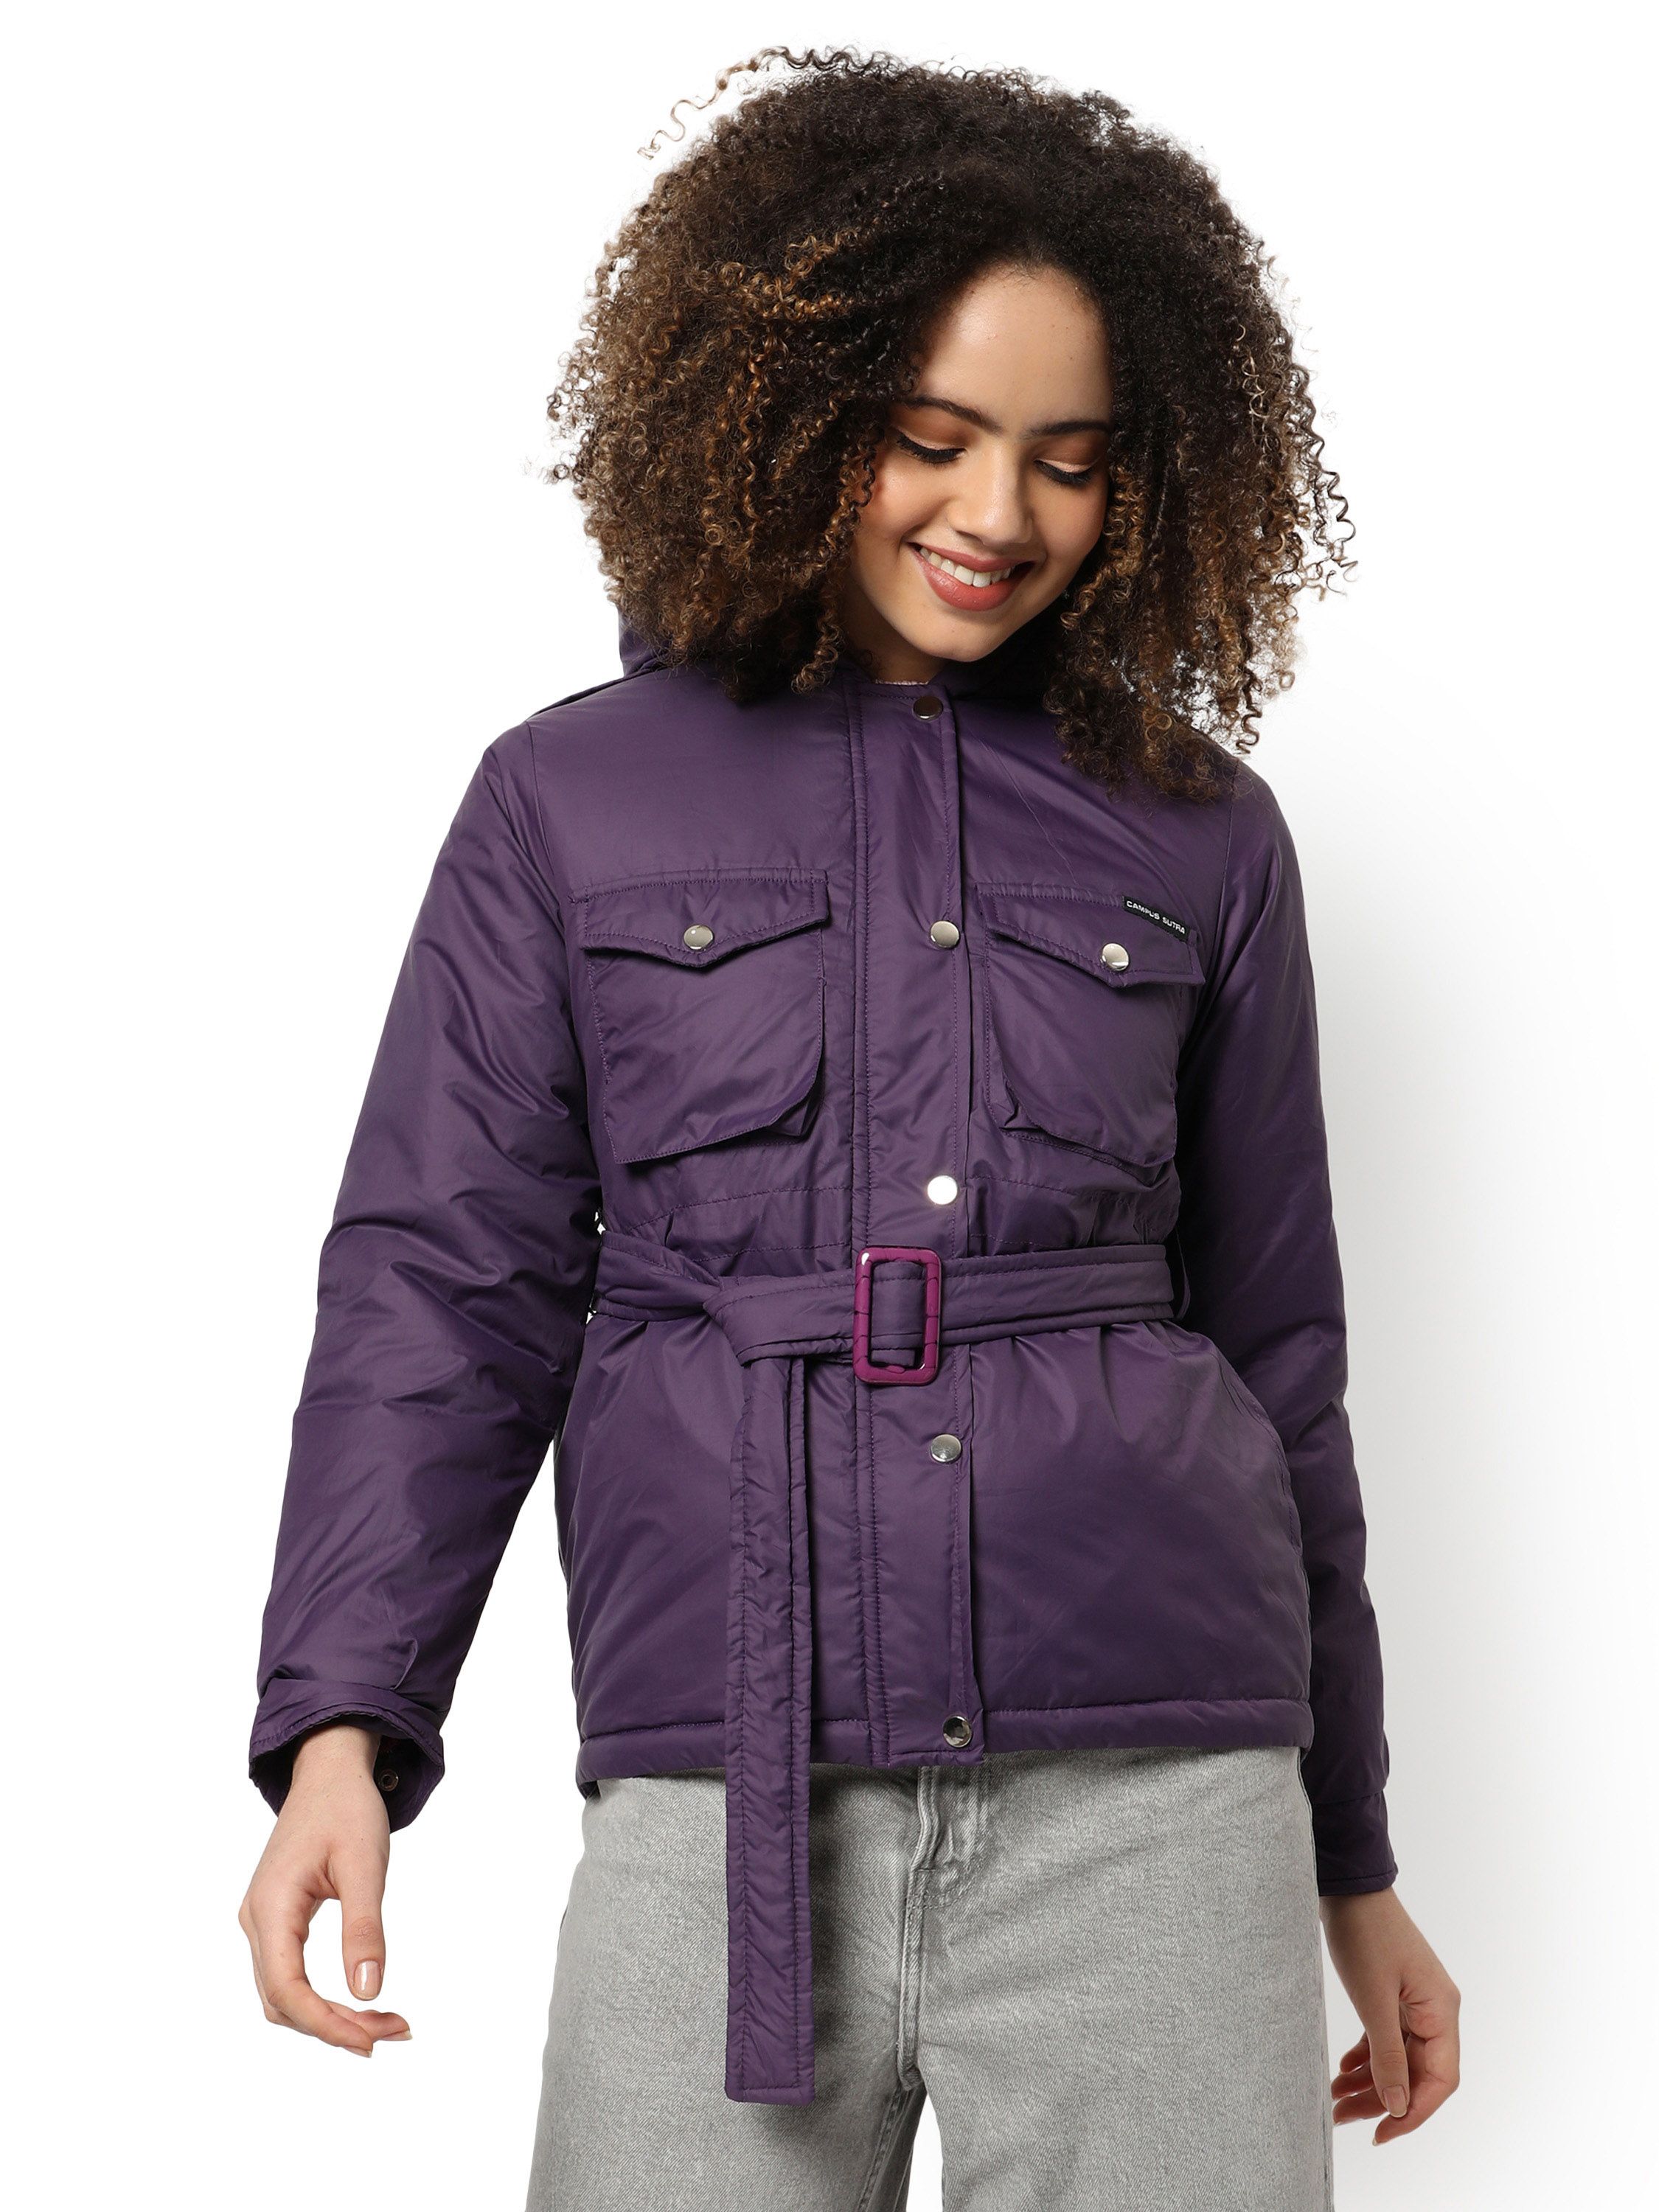 Purple Puffer Regular Fit Bomber Jacket For Winter Wear